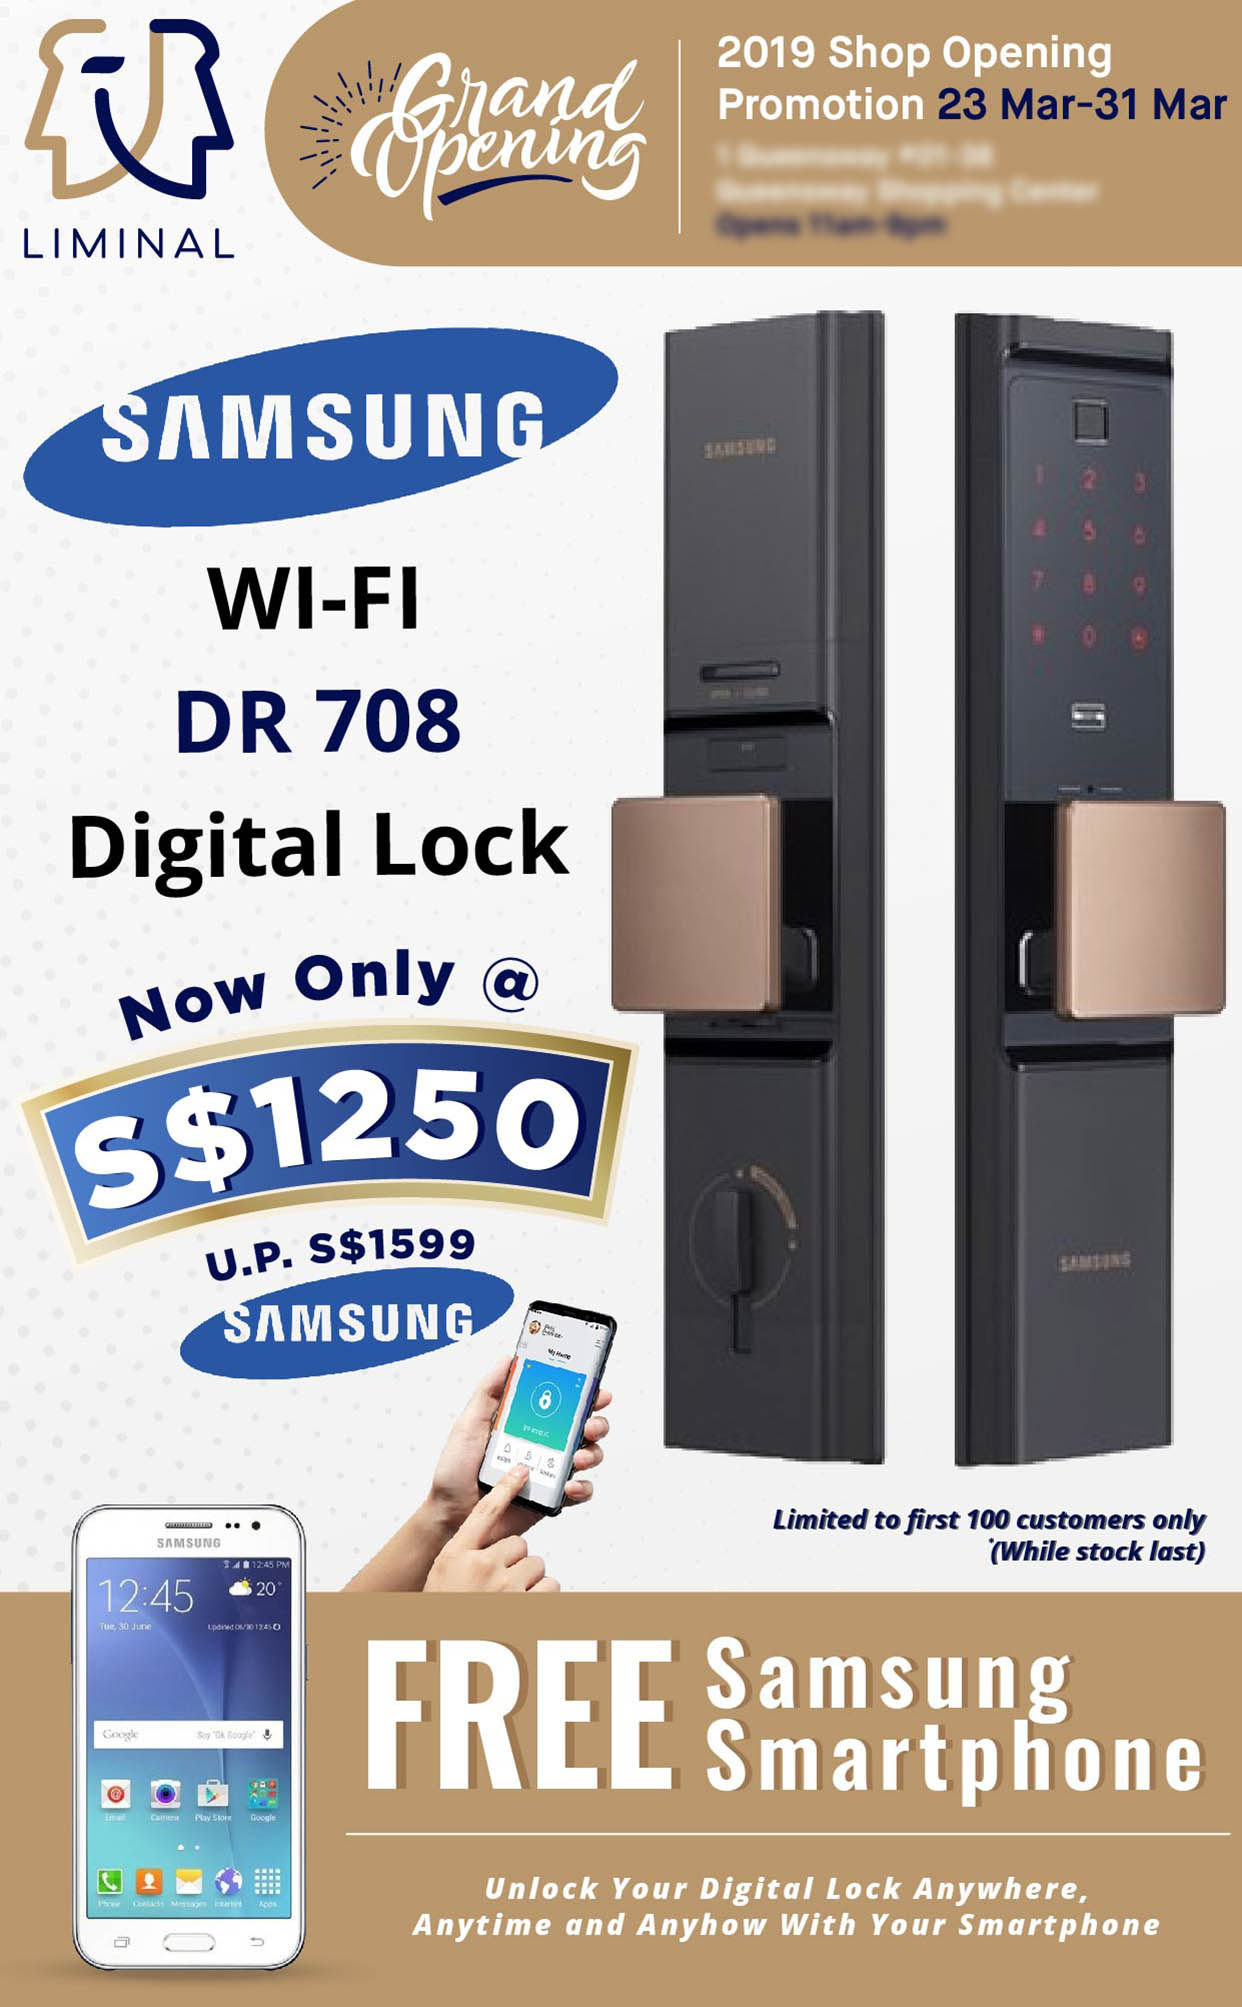 Flyer Design for SamSung Digital Lock